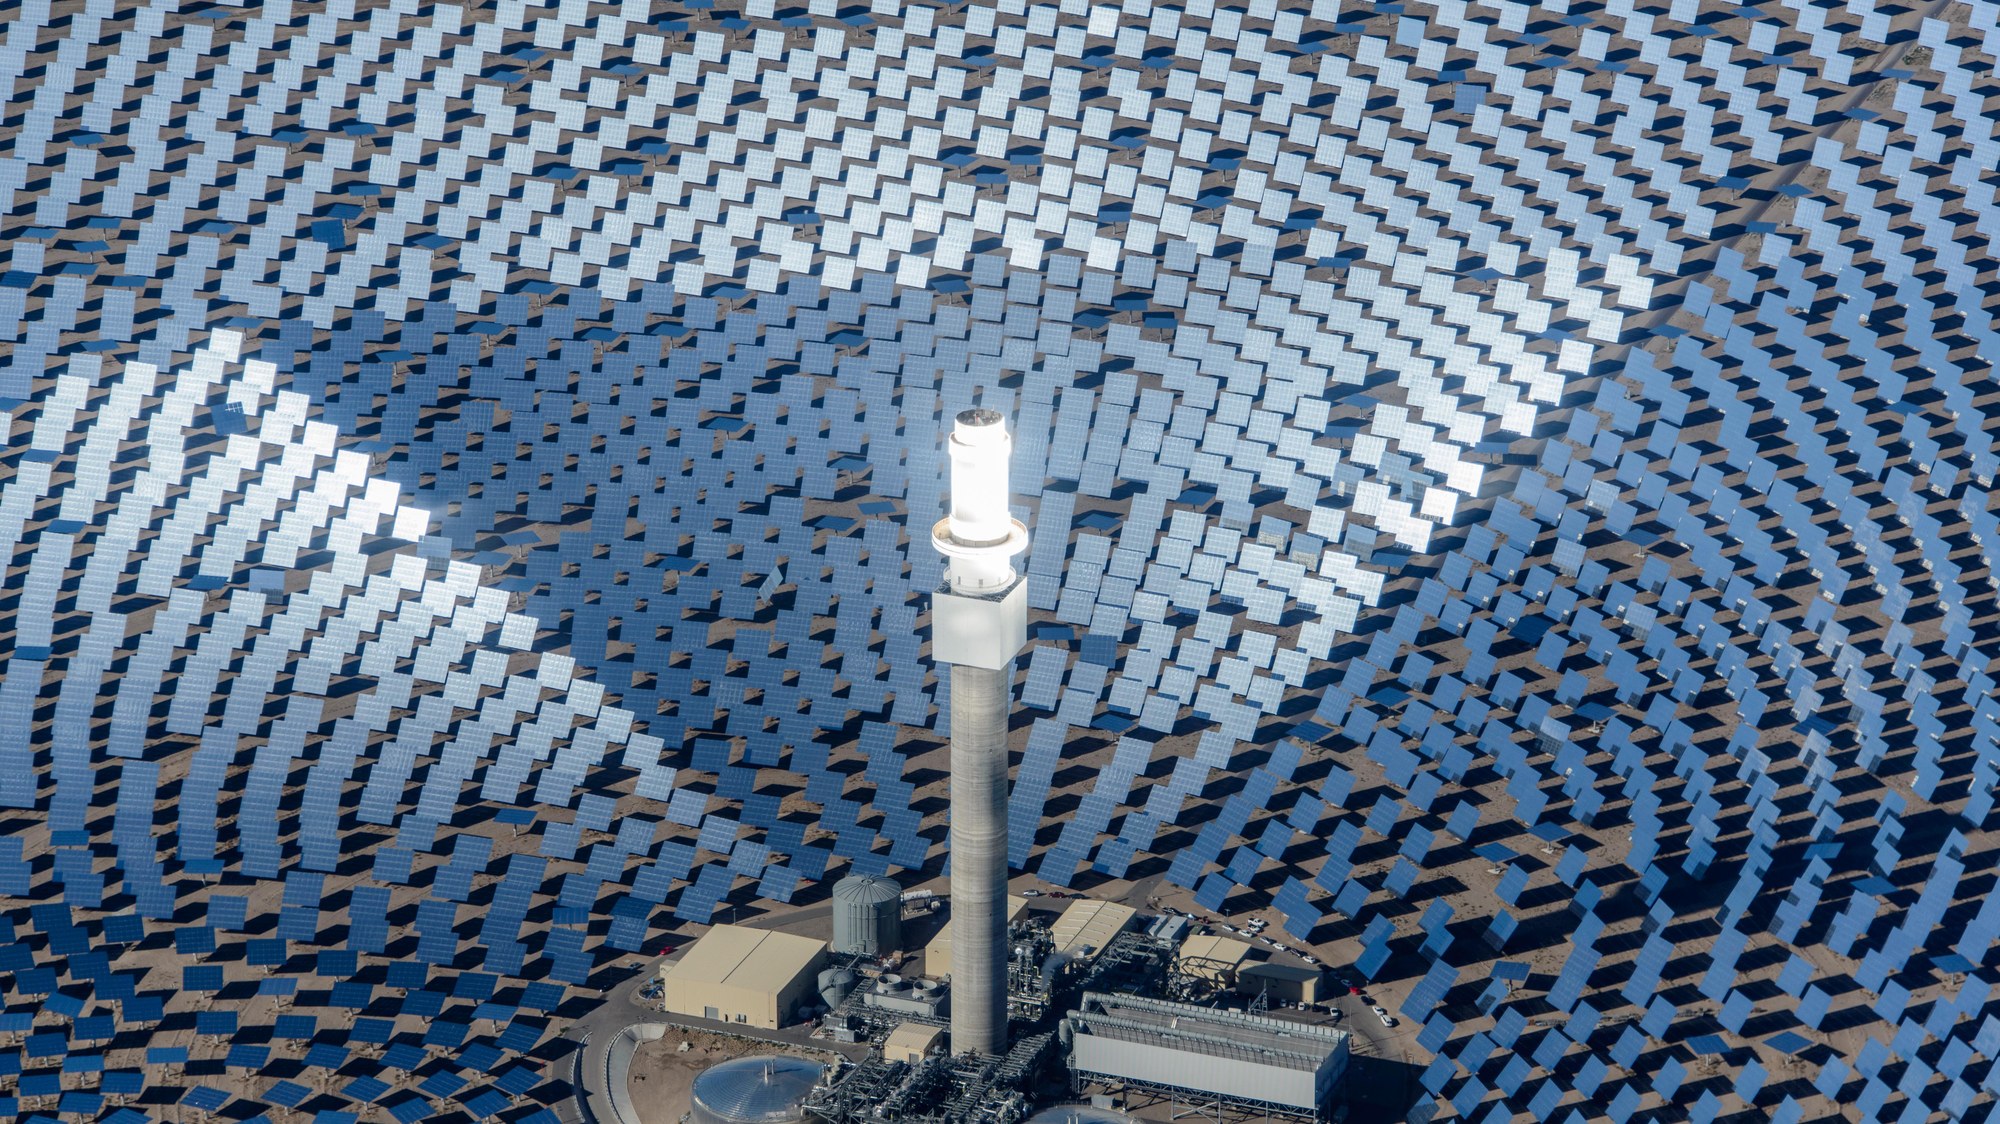 Solarturmkraftwerk Crescent Dunes in Nevada